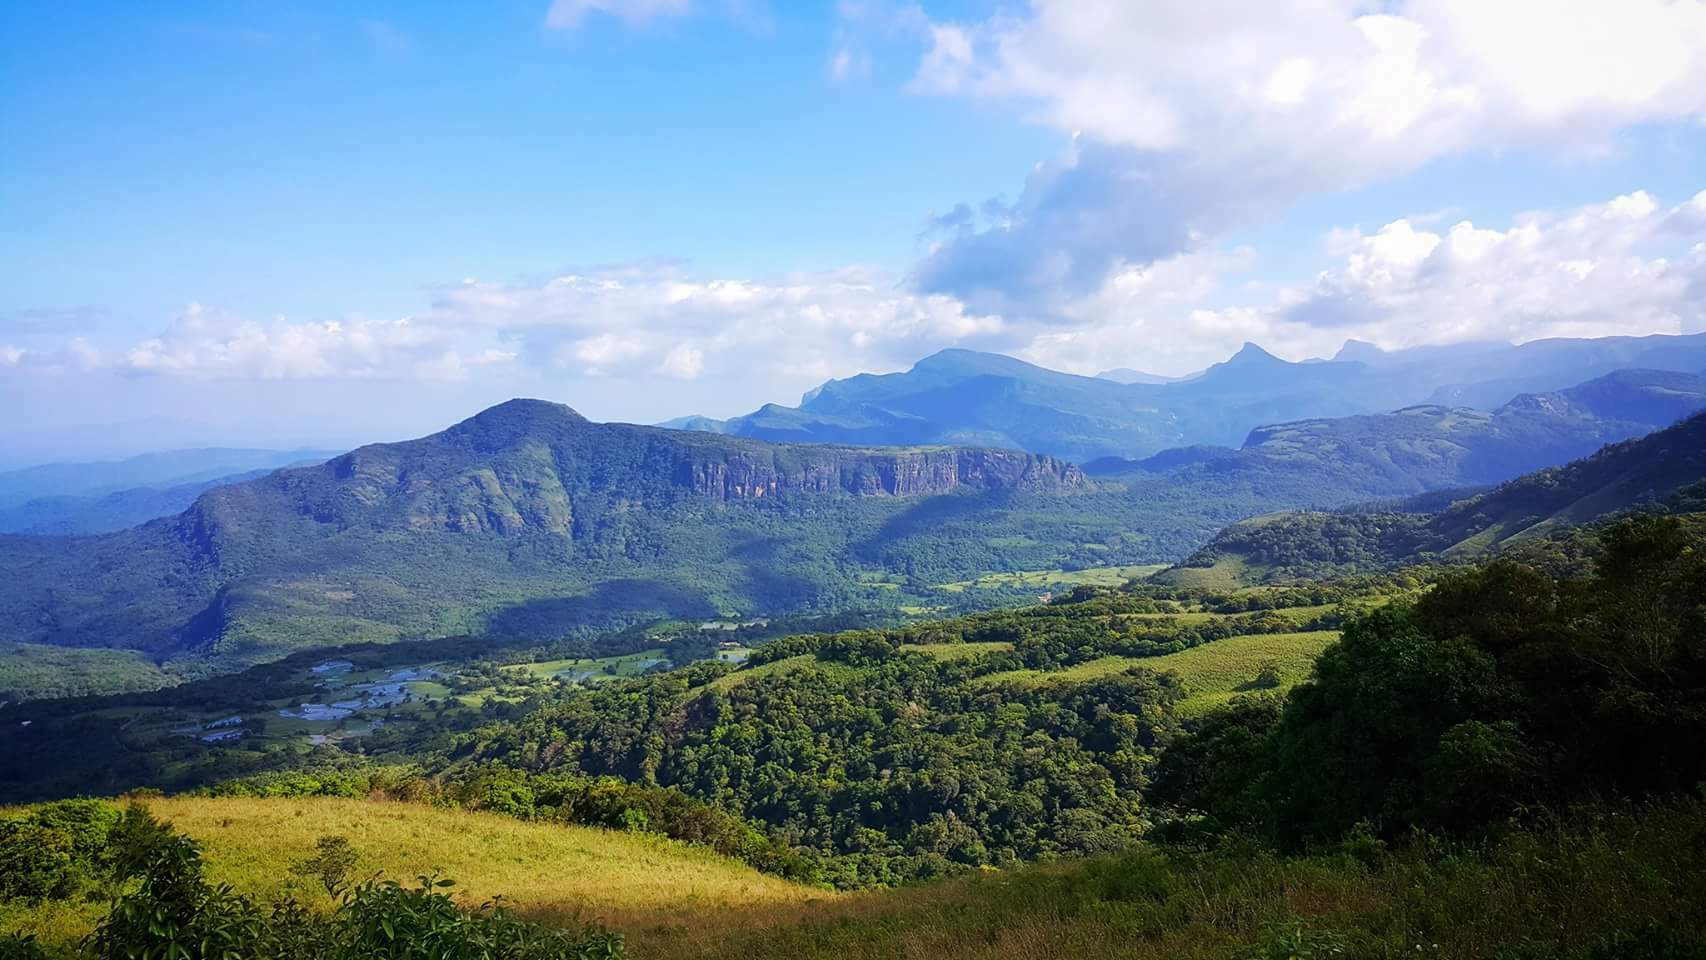 Manigala Mountain in Sri Lanka